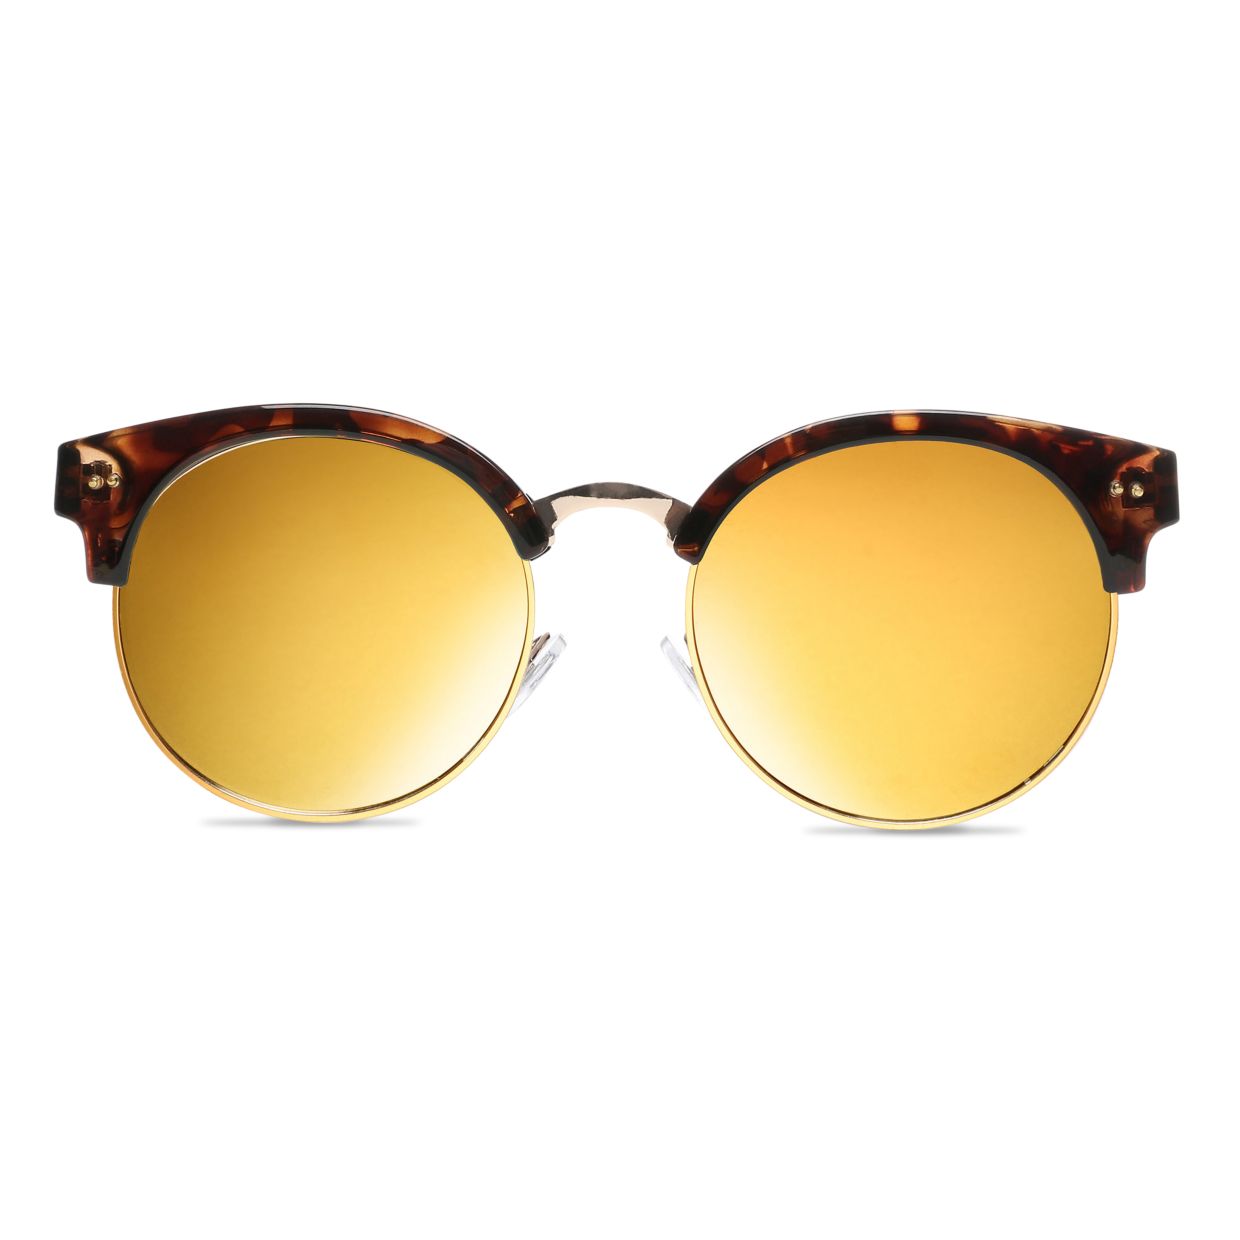 Vans - Rays For Daze Sunglasses - Tortoise Sunset Mirror Lens | Vans | Occhiali da Sole | 15.00 | Beach Break Shop